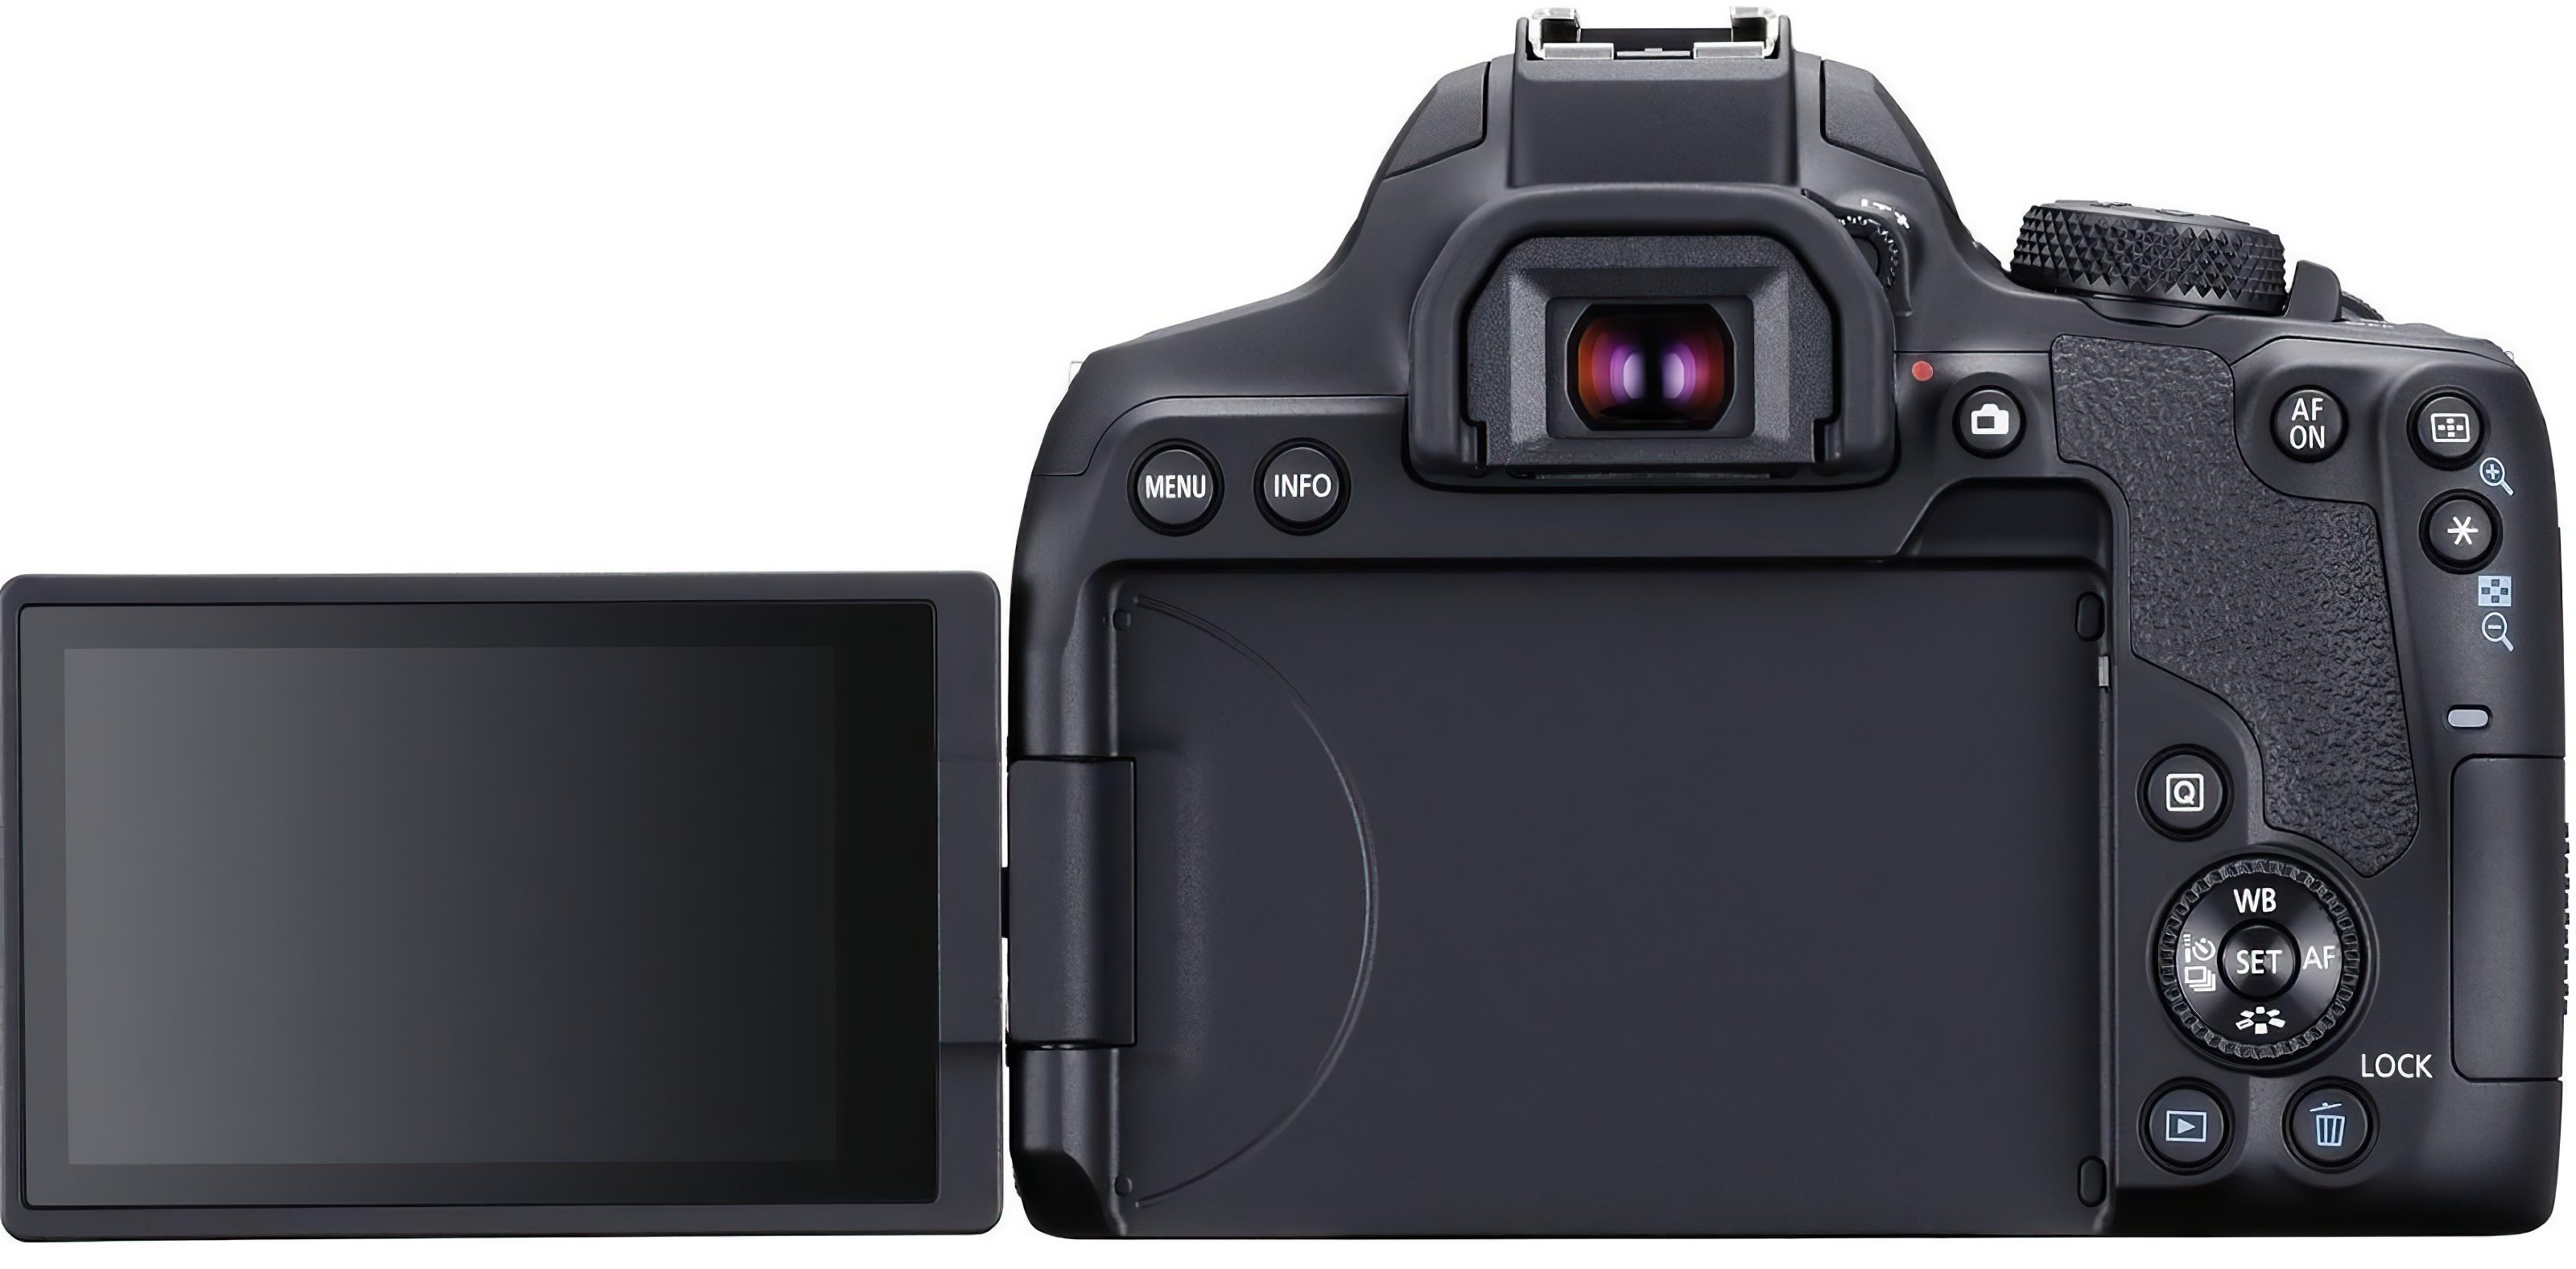 Фотоаппарат Canon EOS 850D Kit EF-S 18-135mm f/3.5-5.6 IS USM, черный